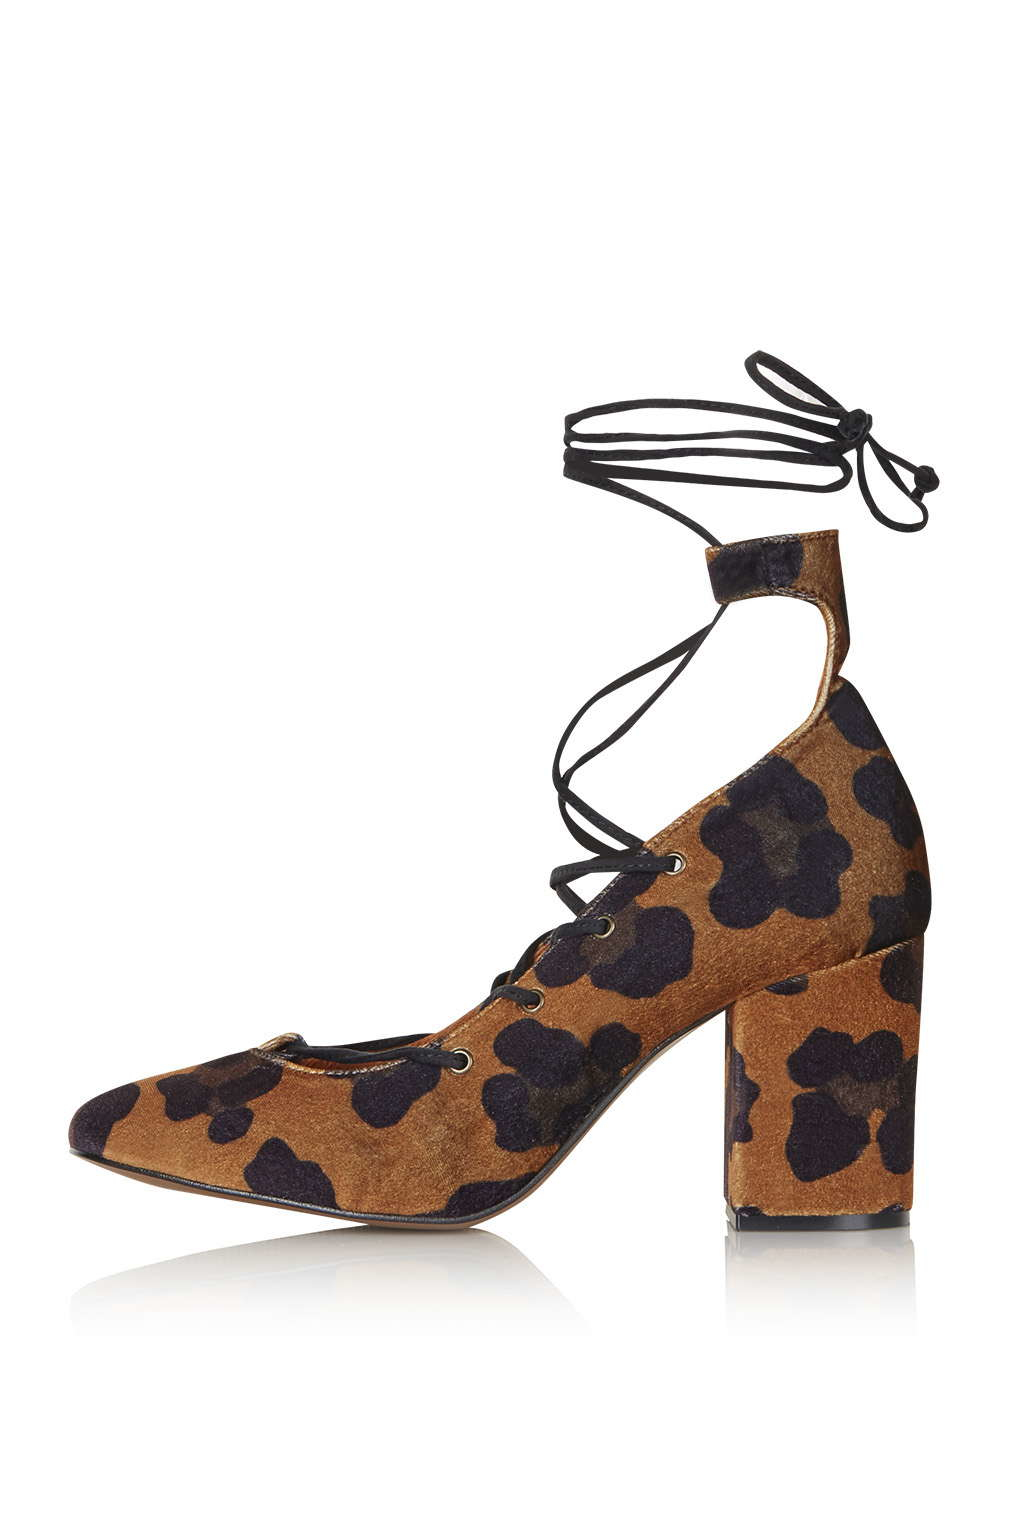 topshop leopard shoes